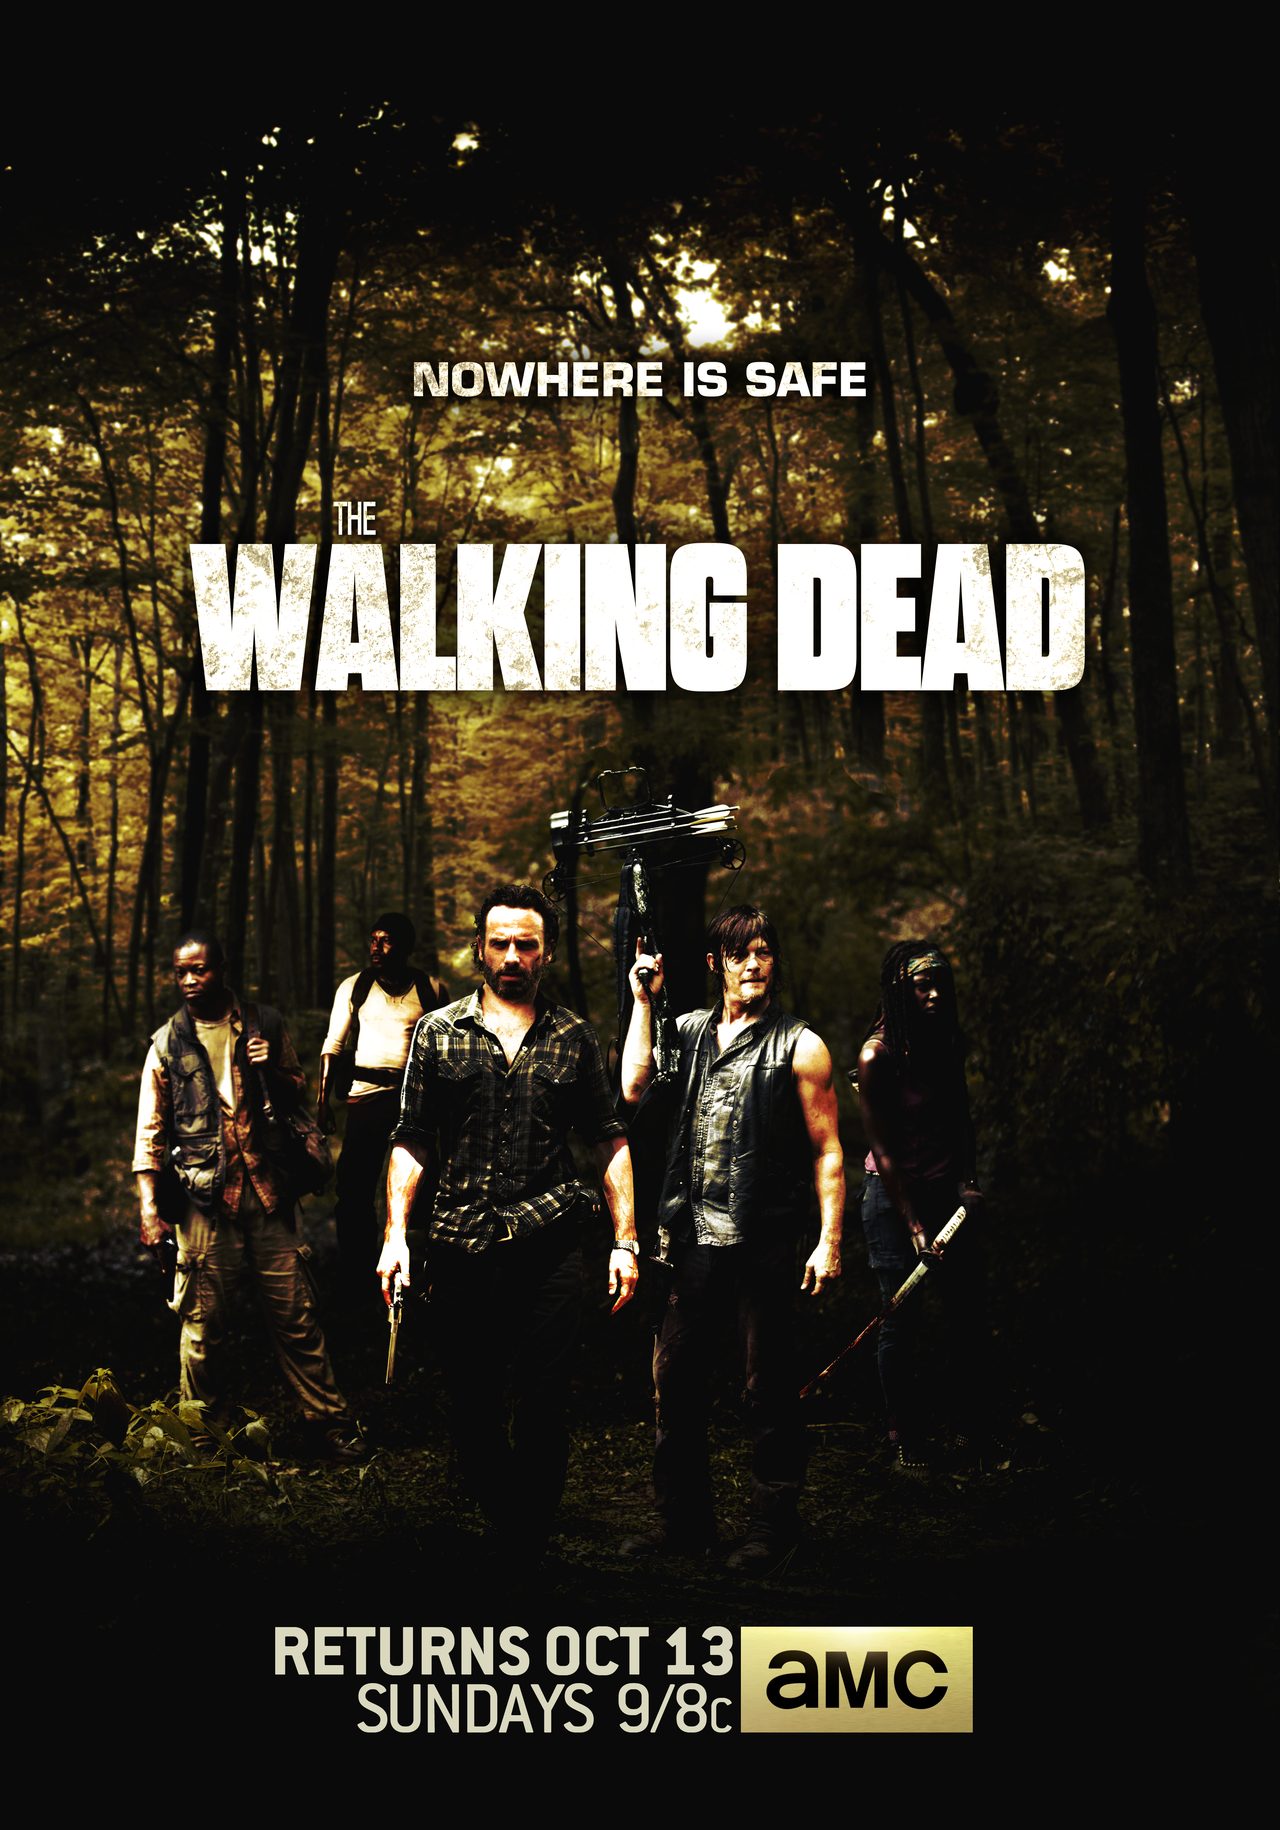 The Walking Dead Season 4 Wallpaper The walking dead season 4